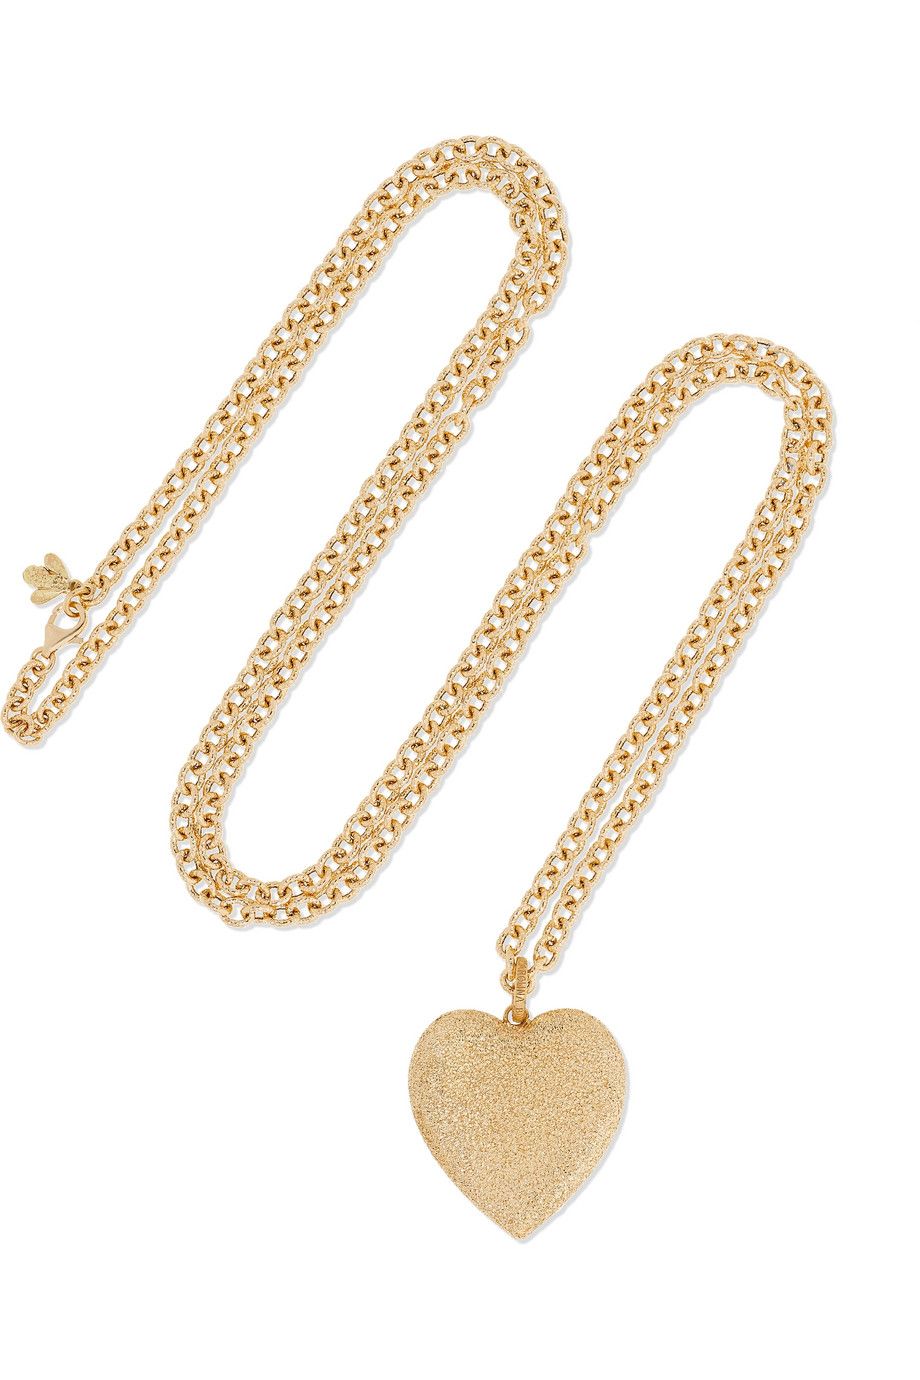 Florentine 18-karat gold necklace